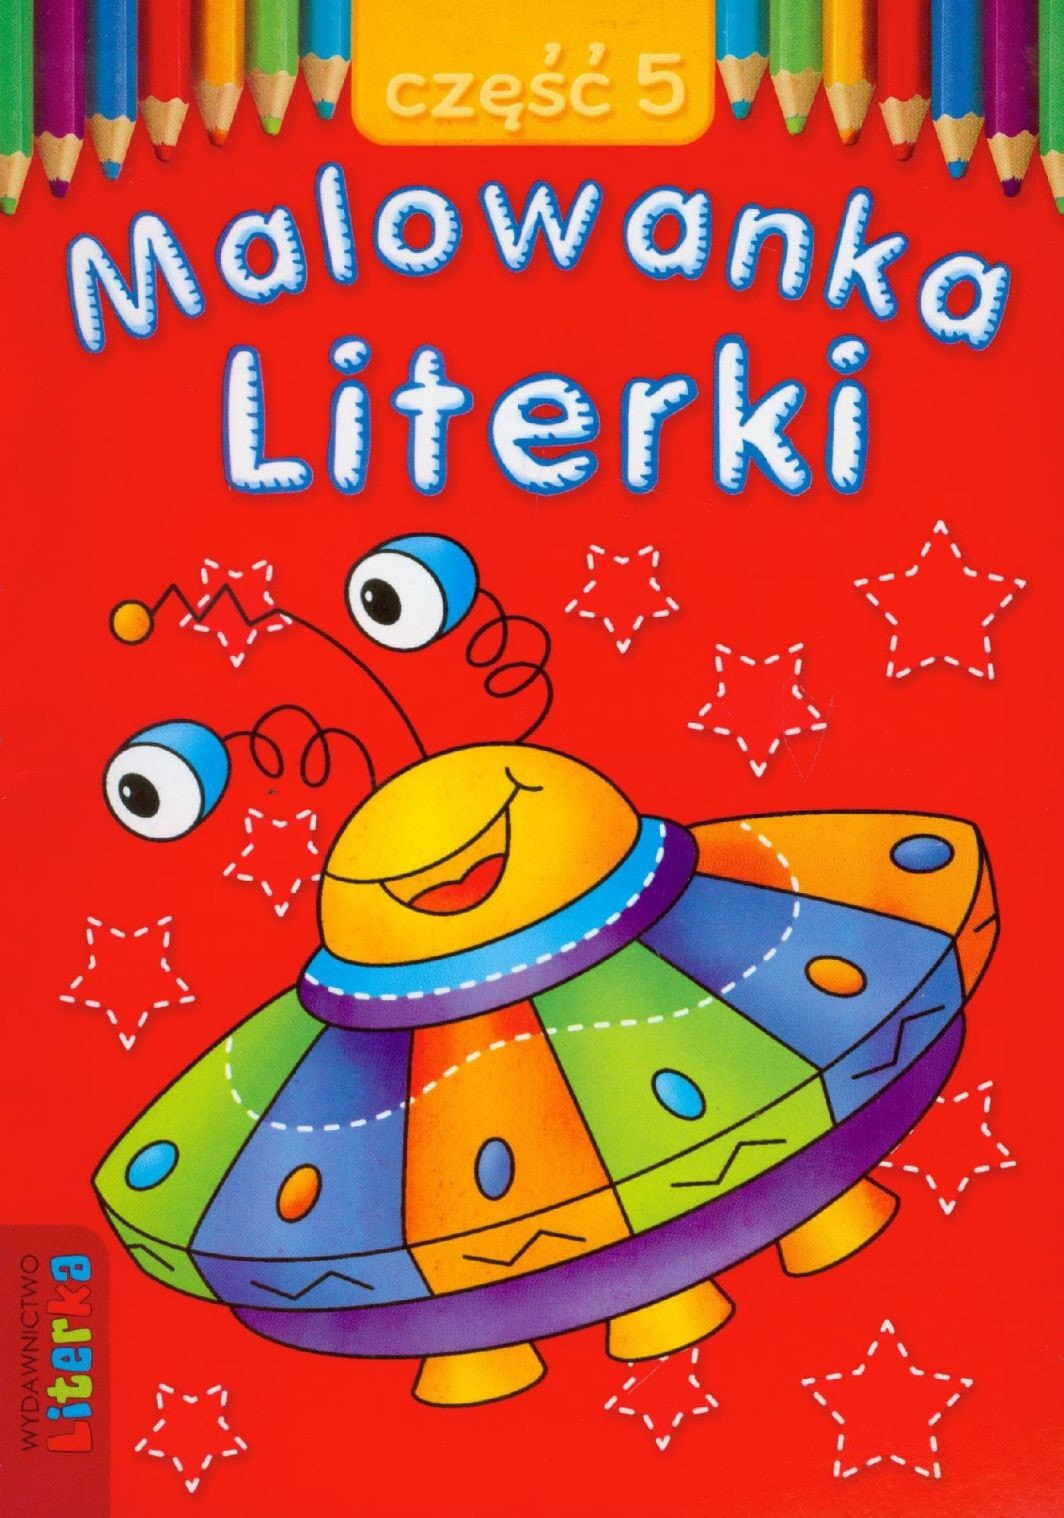 Раскраска для рисования Literka Malowanka - Literki cz. 5